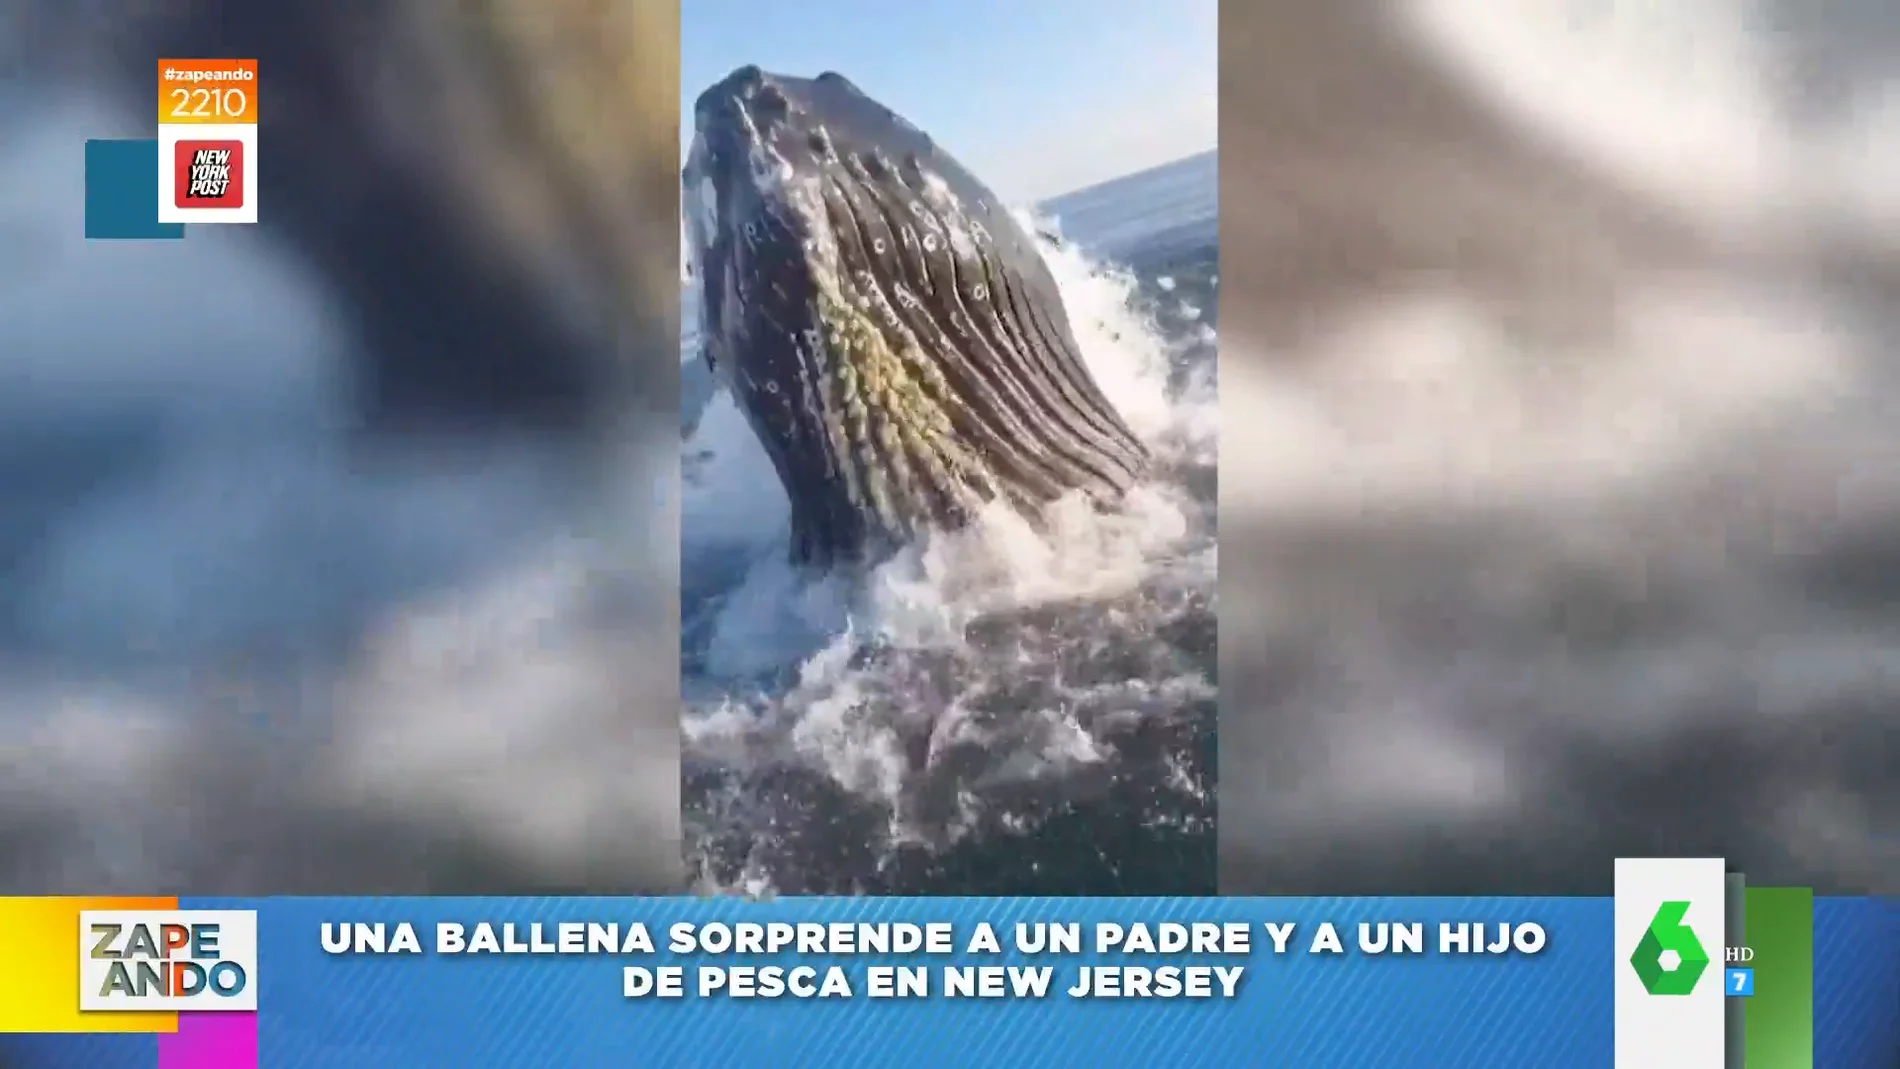 Un padre y un hijo son sorprendidos por una ballena mientras pescaban en New Jersey